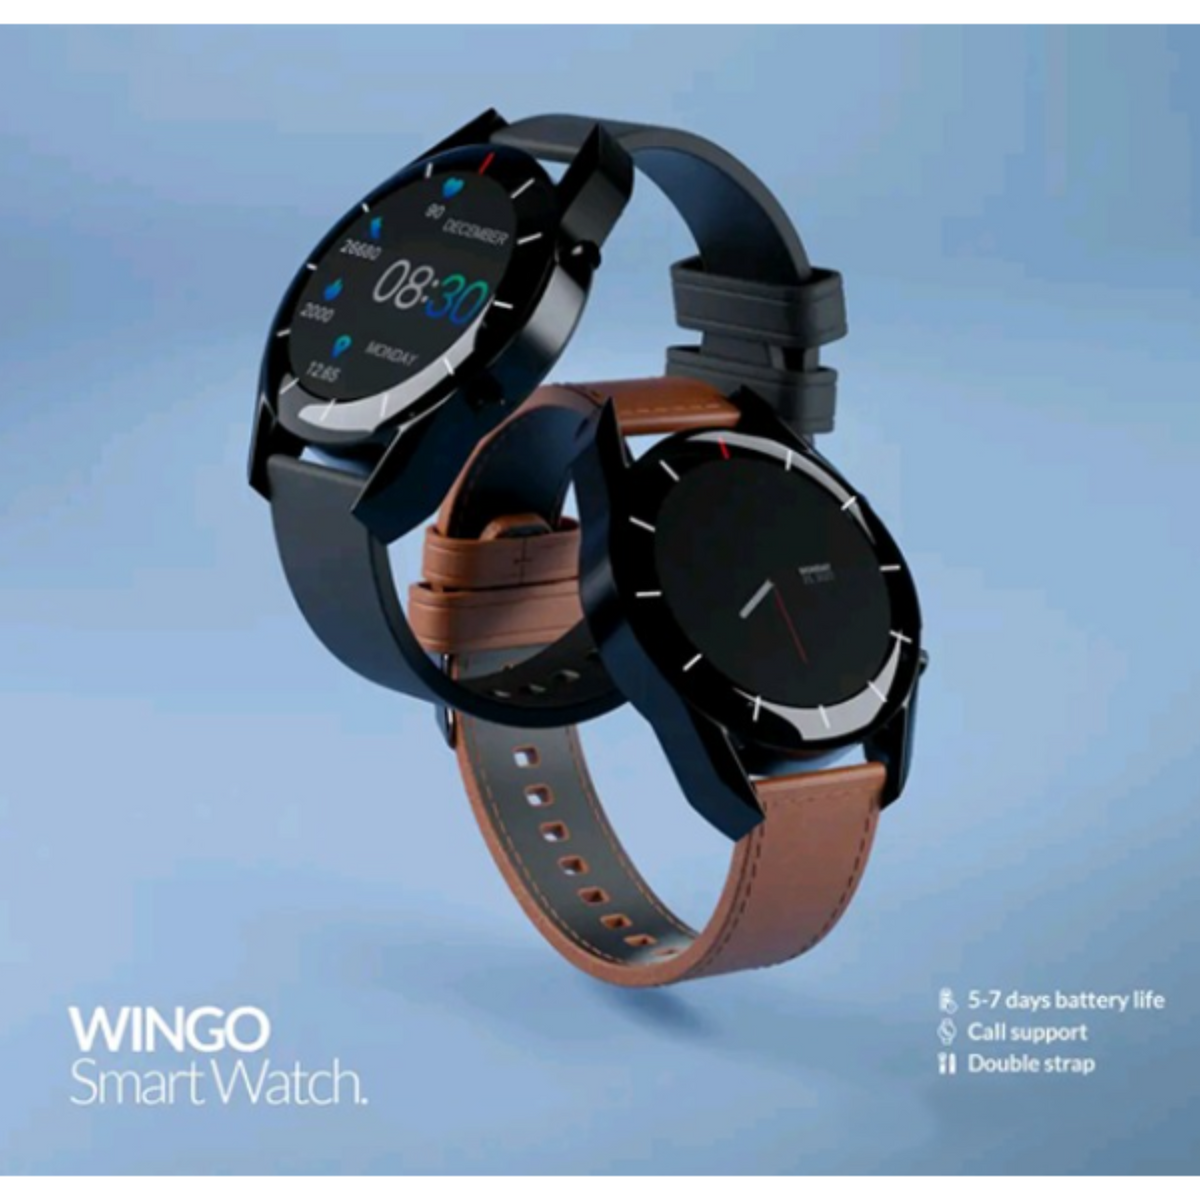 Heatz HW51 Wingo Smart Watch